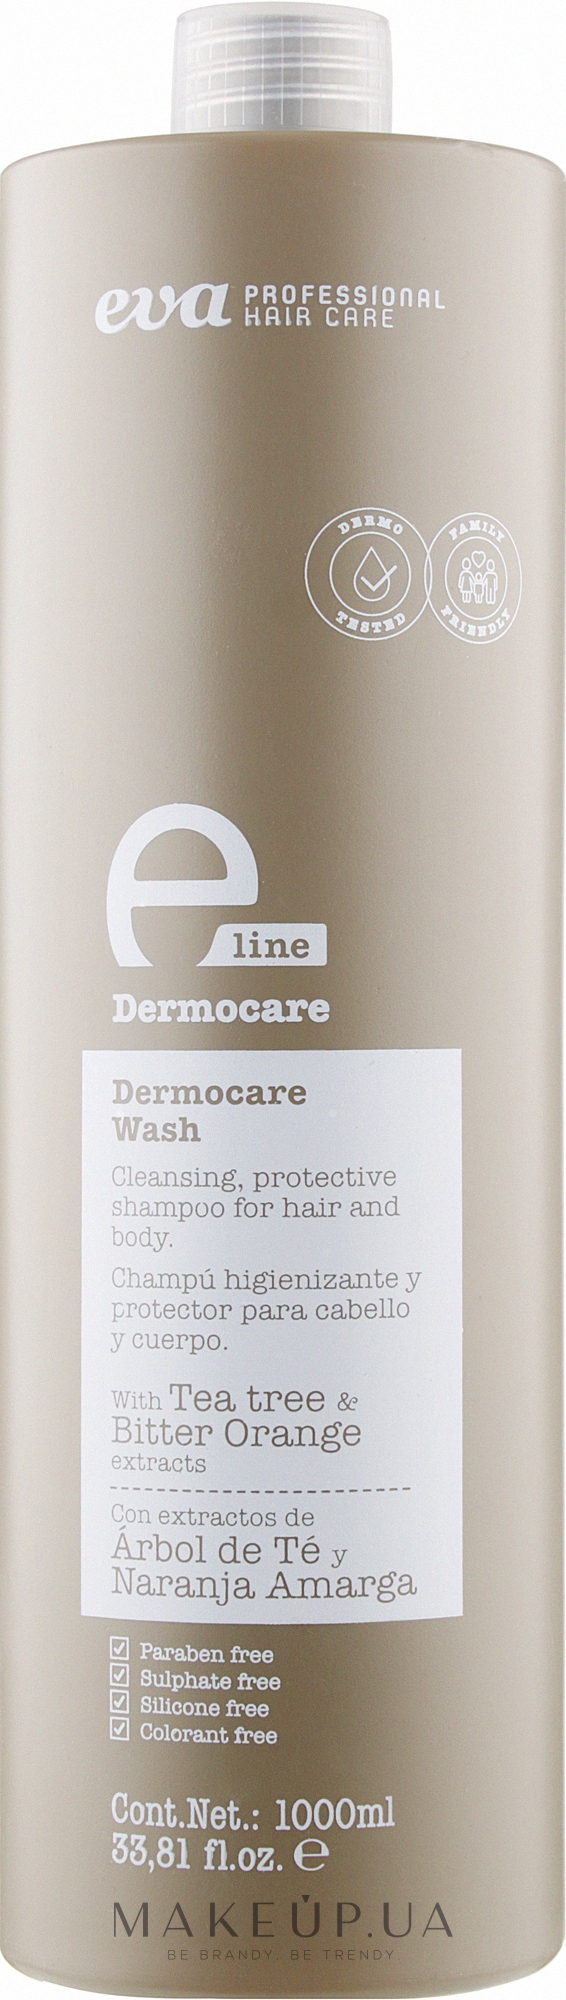 Защитный шампунь для волос - Eva Professional E-line Dermocare Wash Shampoo — фото 1000ml